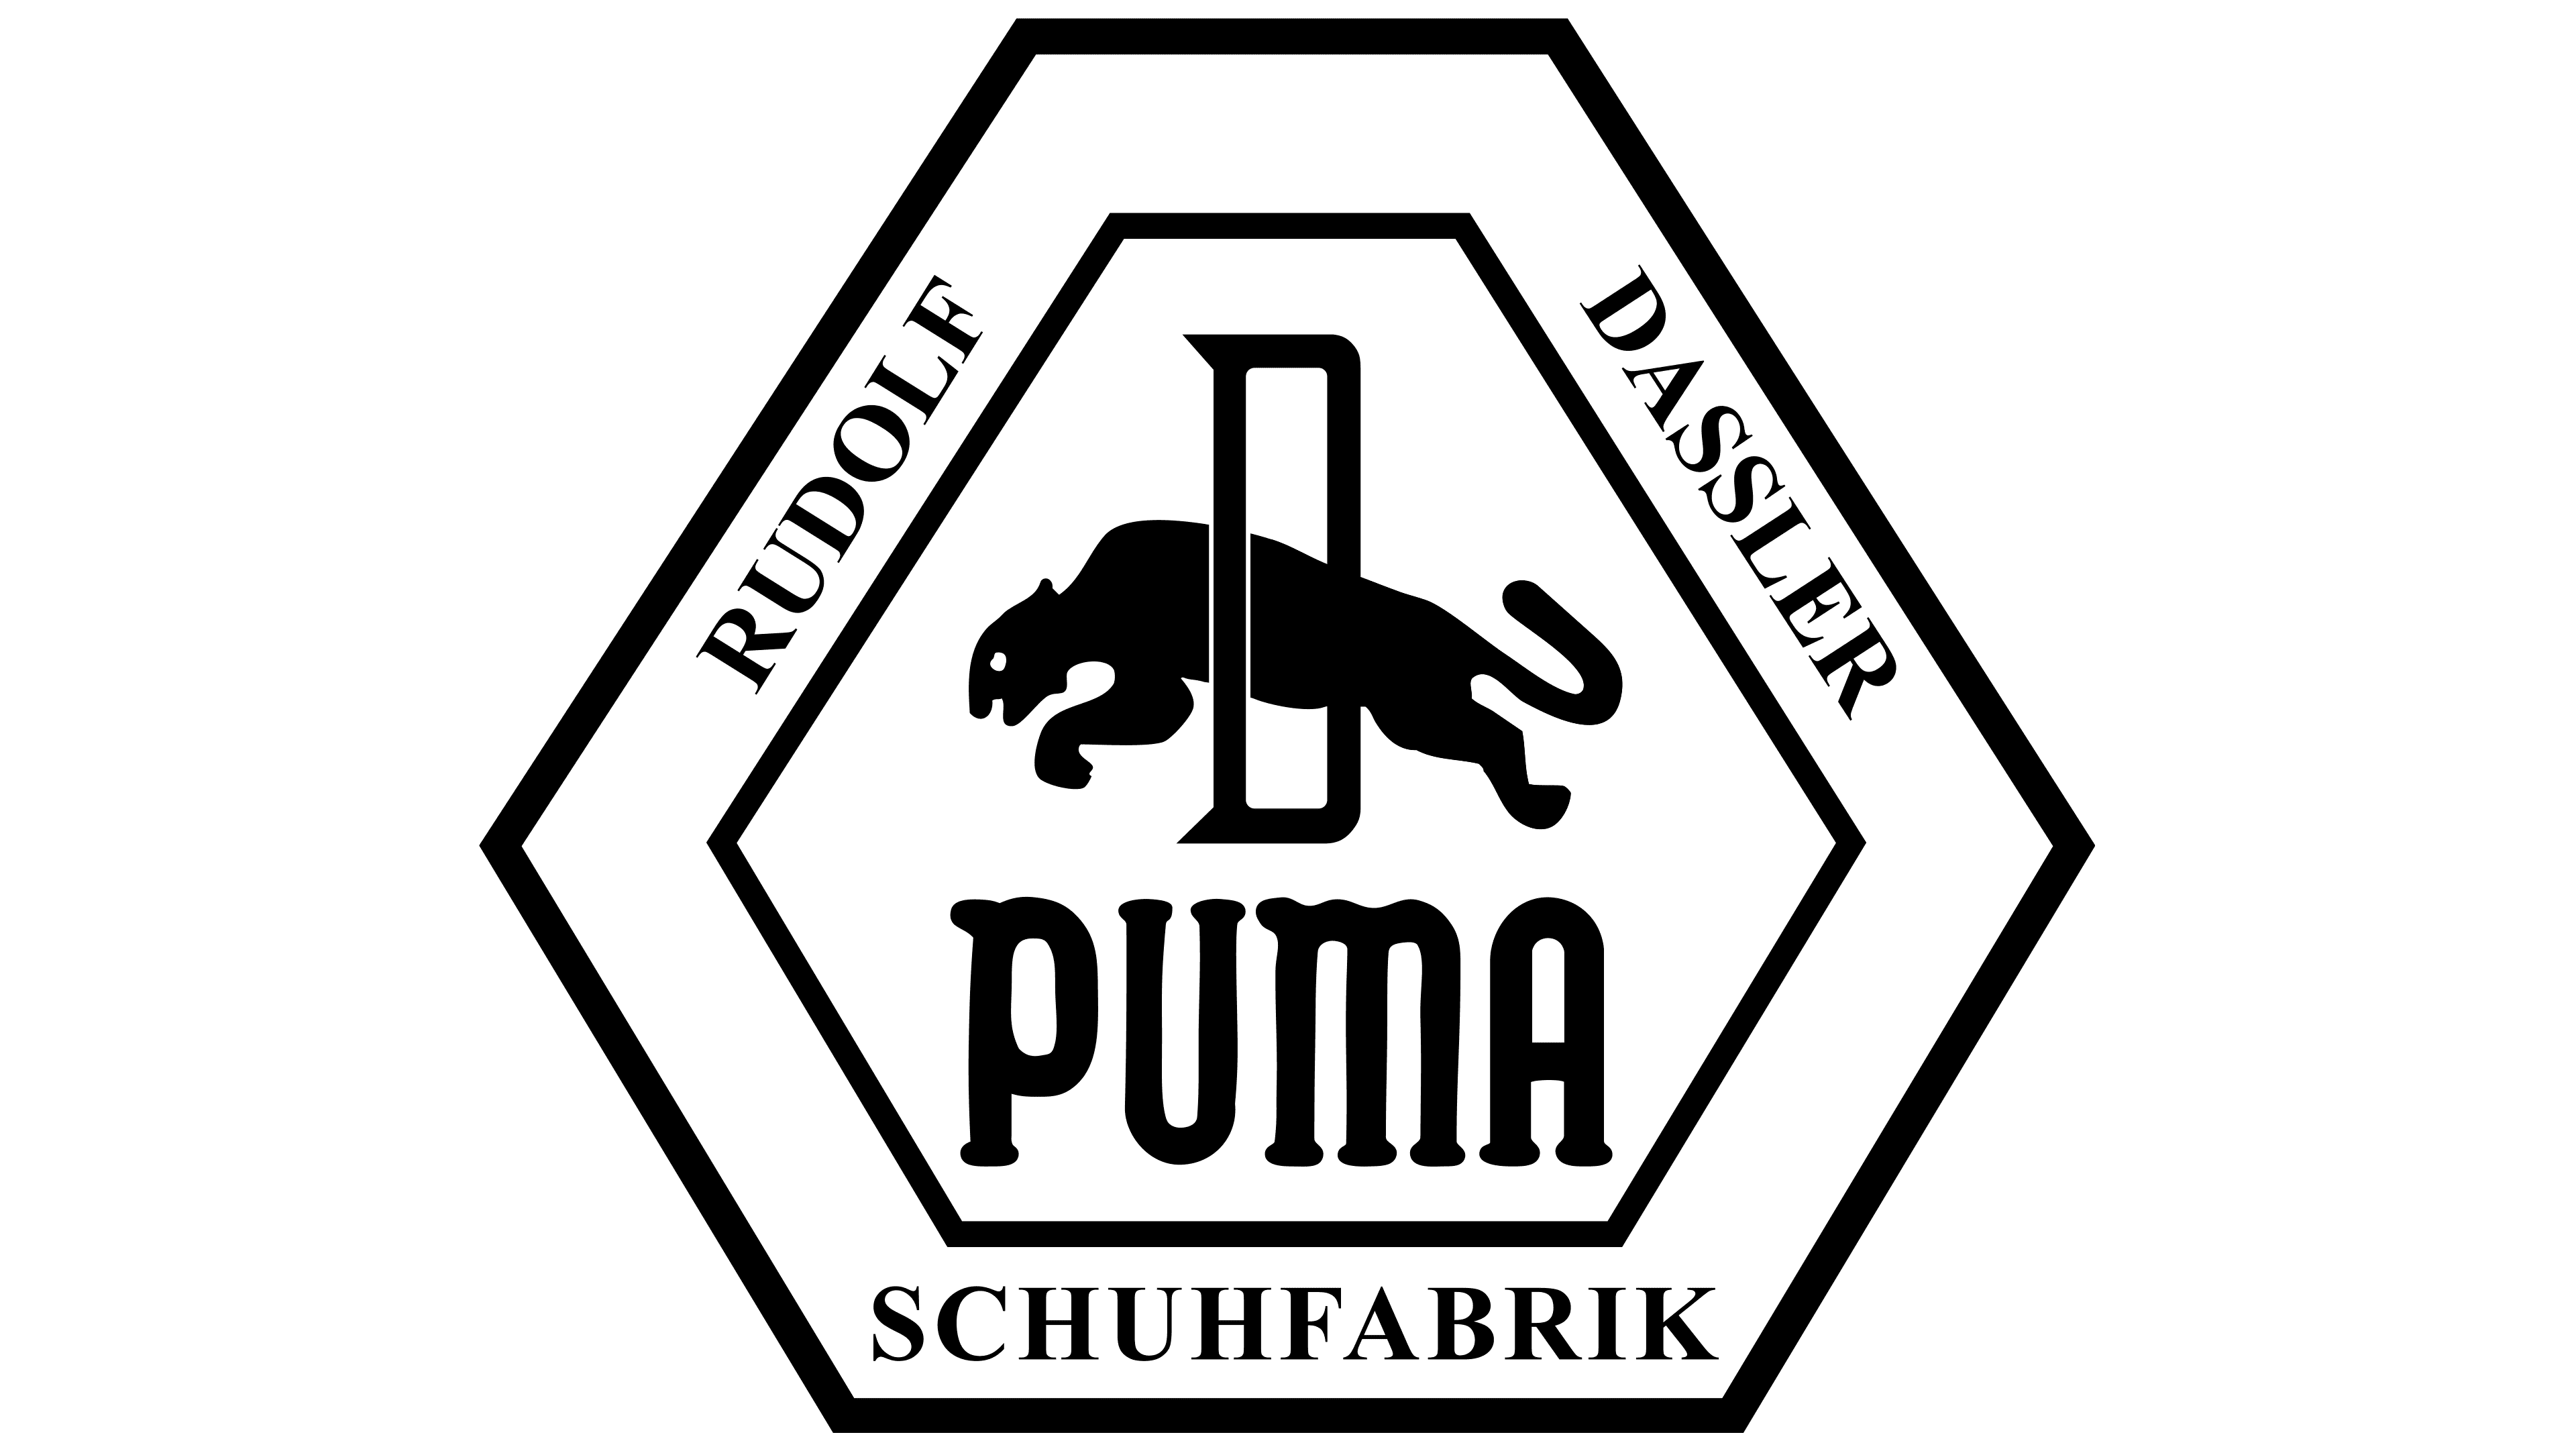 ruda puma off 54% - www 